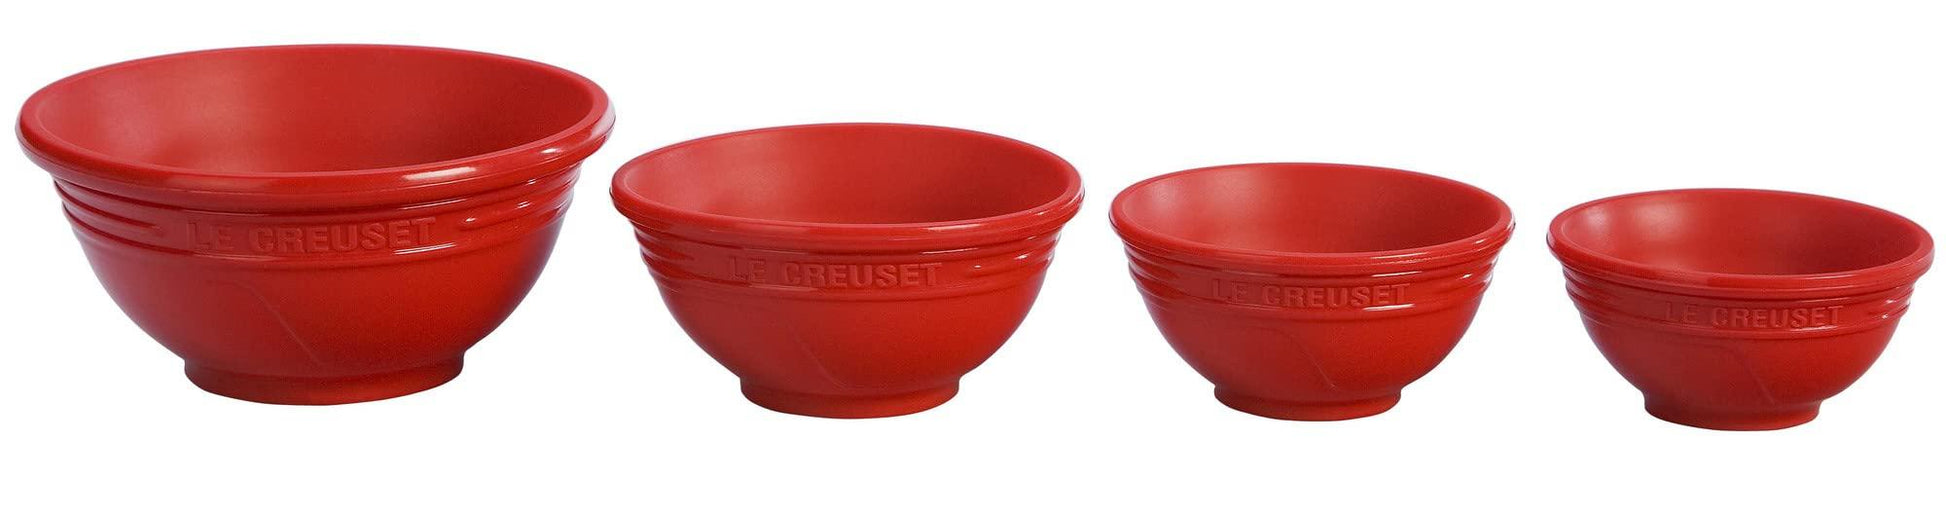 Le Creuset Silicone Prep Bowls, Set of 4 - 1/4c, 1/3c, 1/2c & 1 cup, Cerise - CookCave